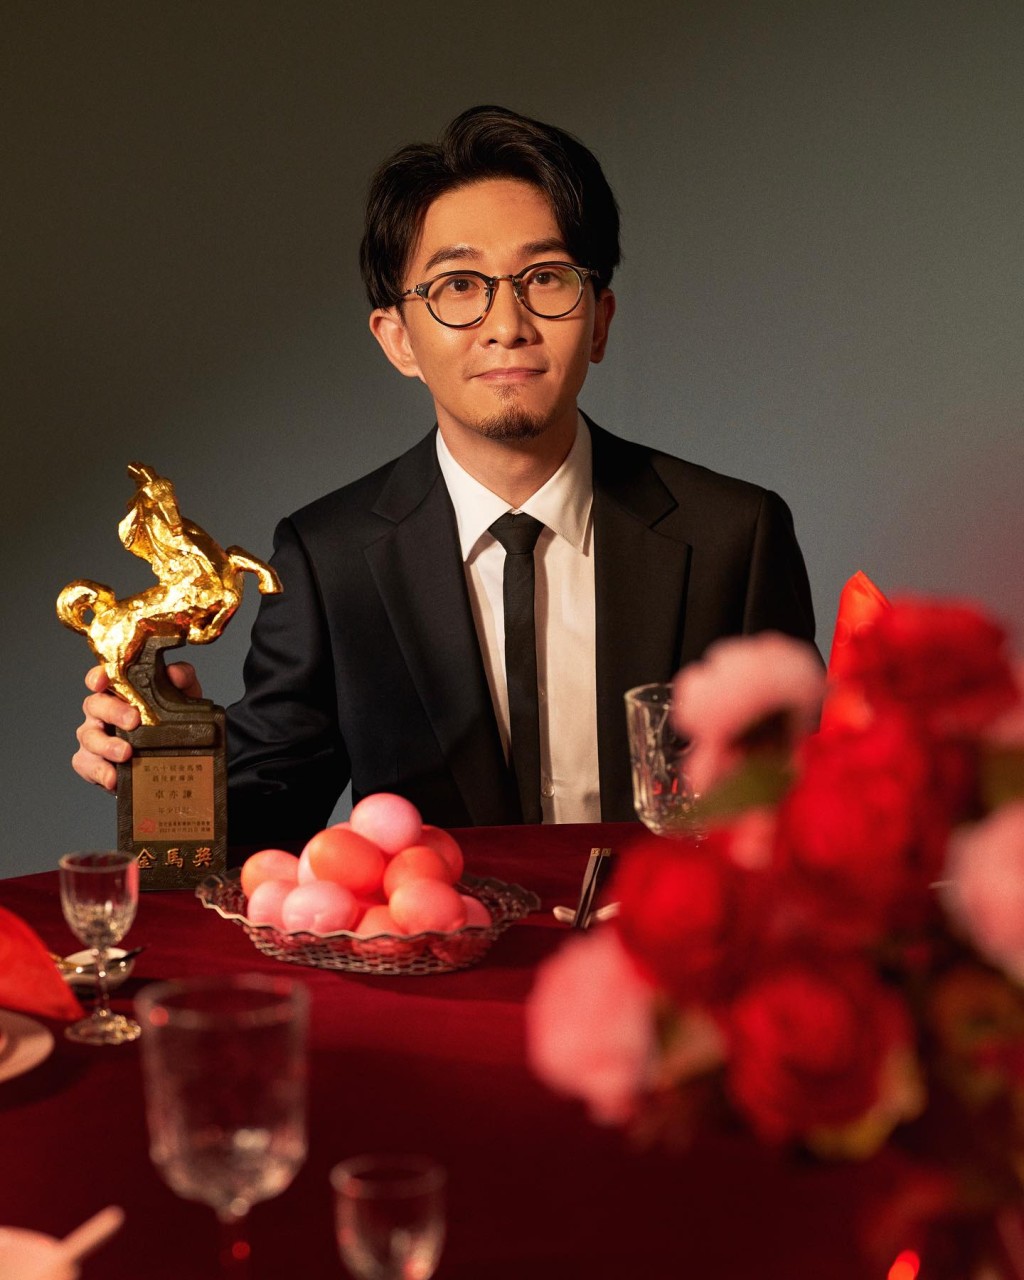 反而在畢業後一年，卓亦謙參加第18屆ifva比賽奪得銀獎，作品終受肯定。